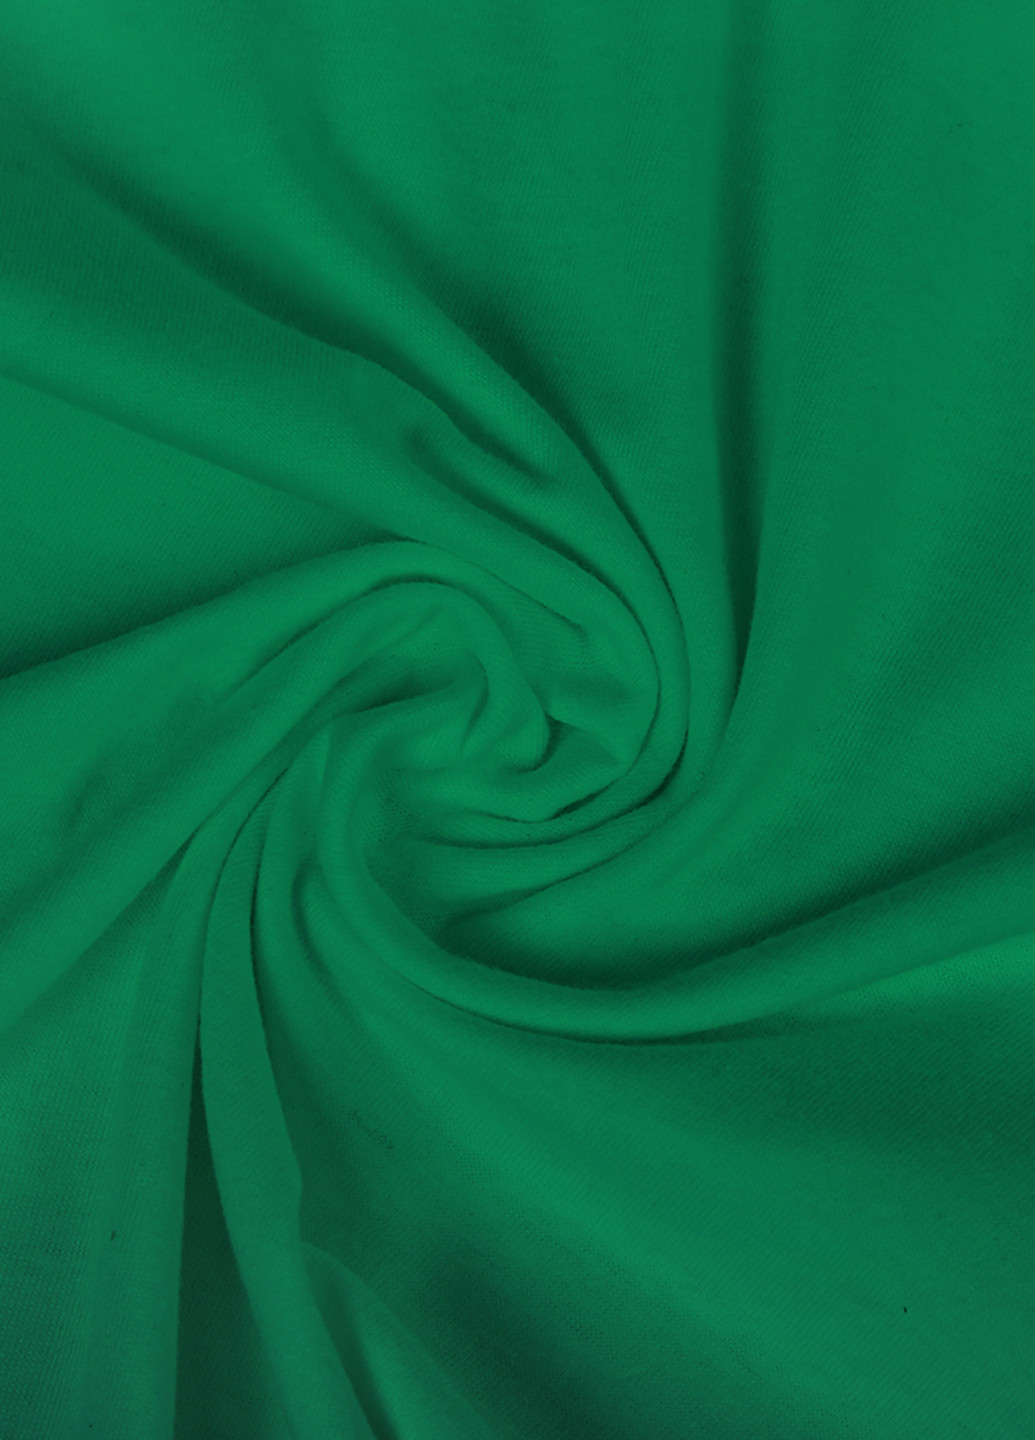 Зеленая демисезонная футболка детская амонг ас самозванцы (among us impostors)(9224-2415) MobiPrint